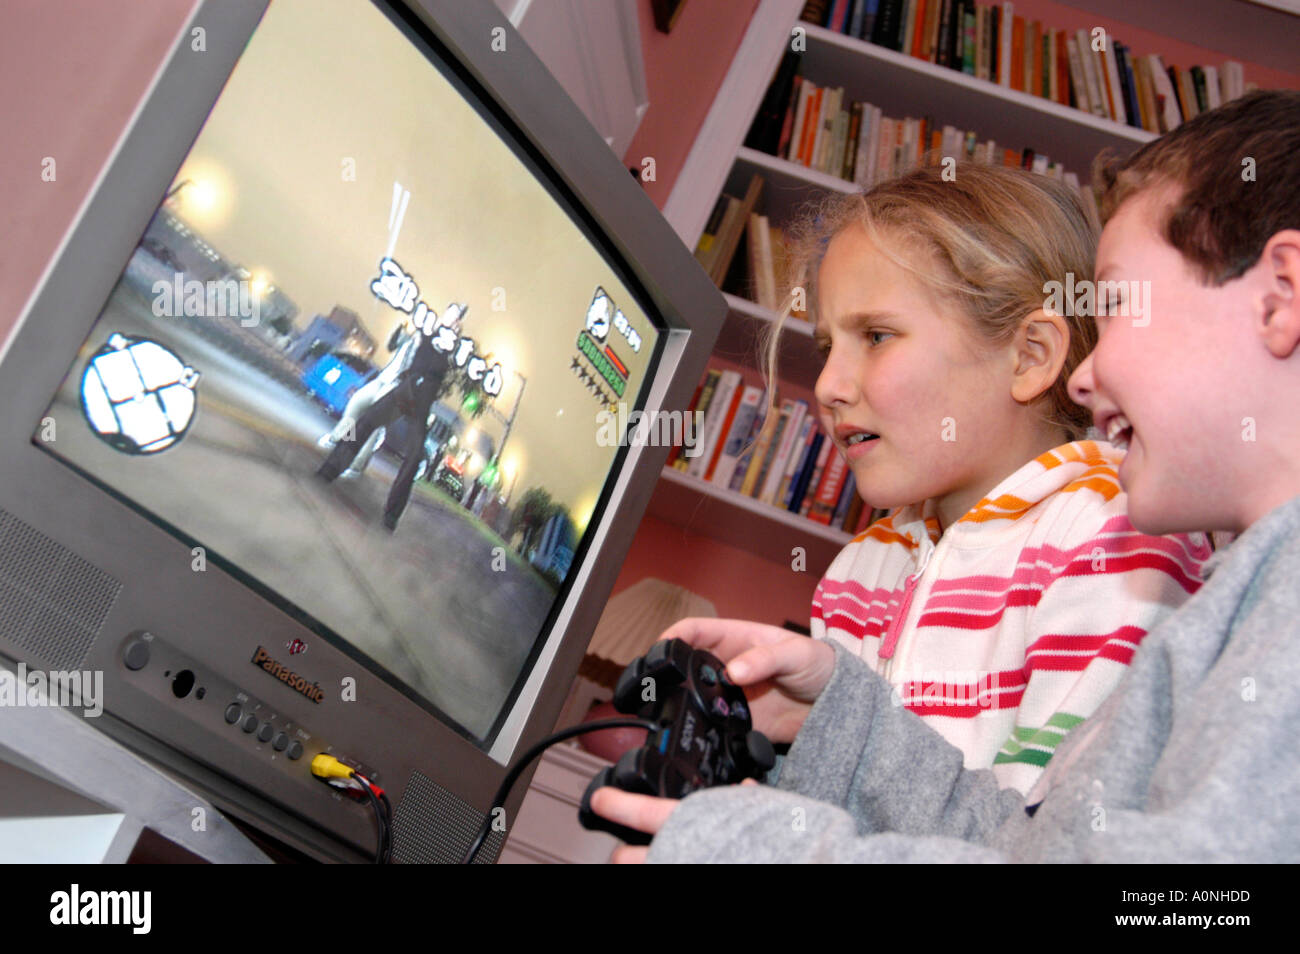 Bambini che giocano una violenta 18 Certificato computer nominale gioco Grand Theft Auto su Sony Playstation console, England, Regno Unito Foto Stock